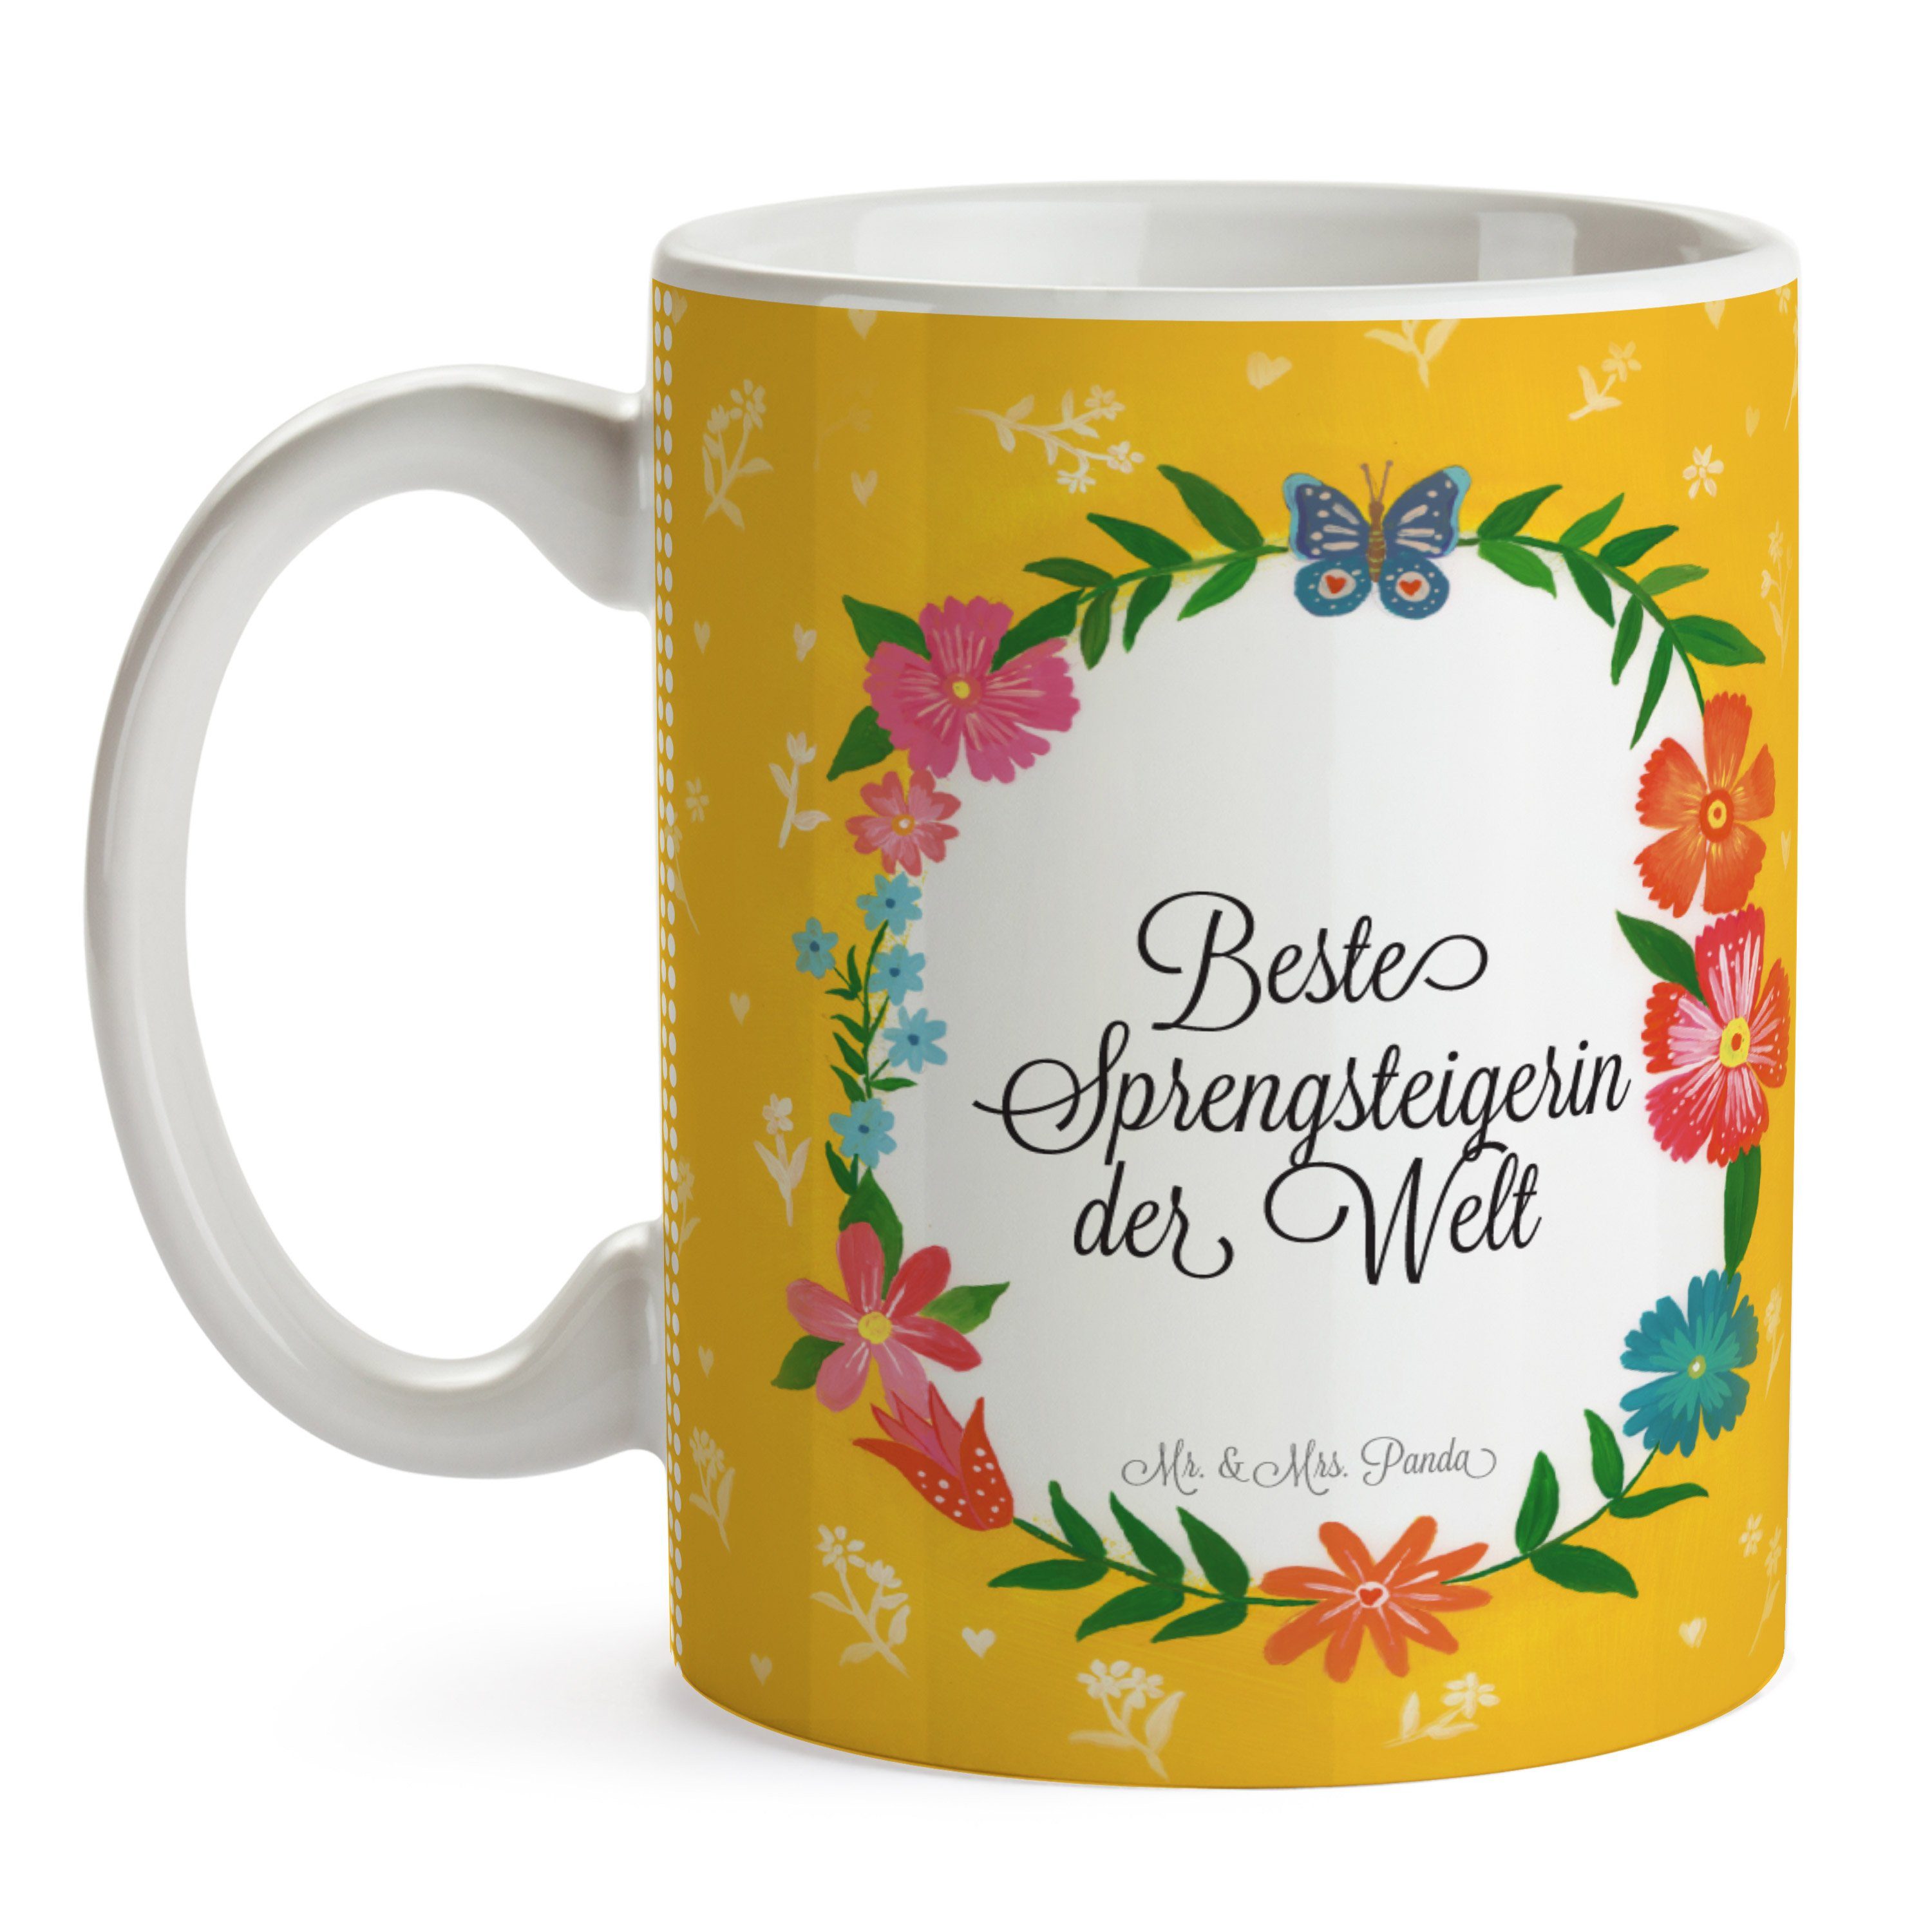 & Mr. Keramik Tasse, - Geschenk, Mrs. Büro Tass, Kaffeetasse, Ausbildung, Tasse Sprengsteigerin Panda